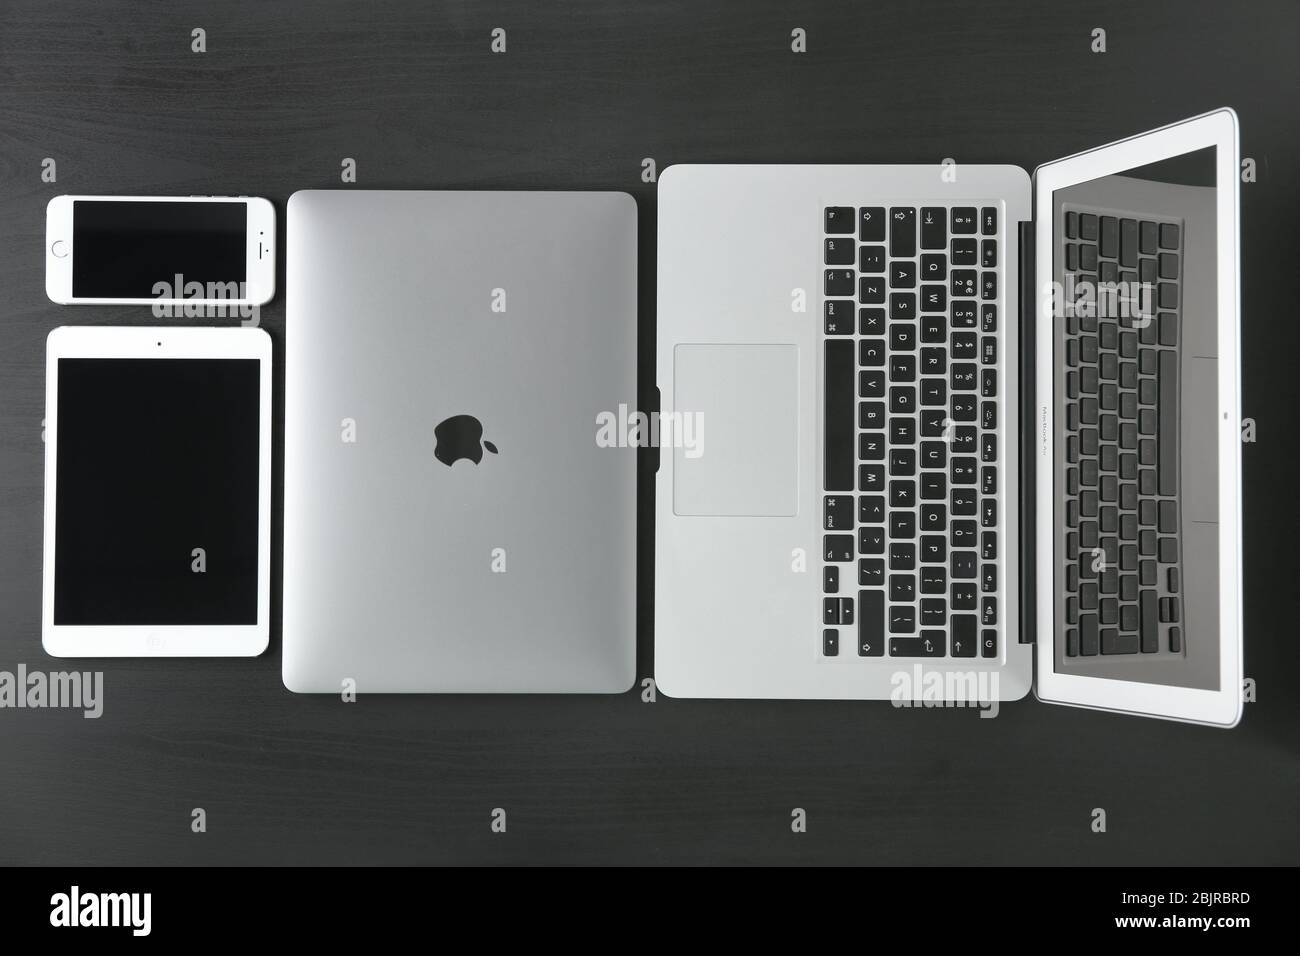 KIEW, UKRAINE - 23. OKTOBER 2017: Apple MacBook Air Silver, MacBook Pro  Space Grey, iPad mini 4 und iPhone 6s auf dunklem Hintergrund  Stockfotografie - Alamy